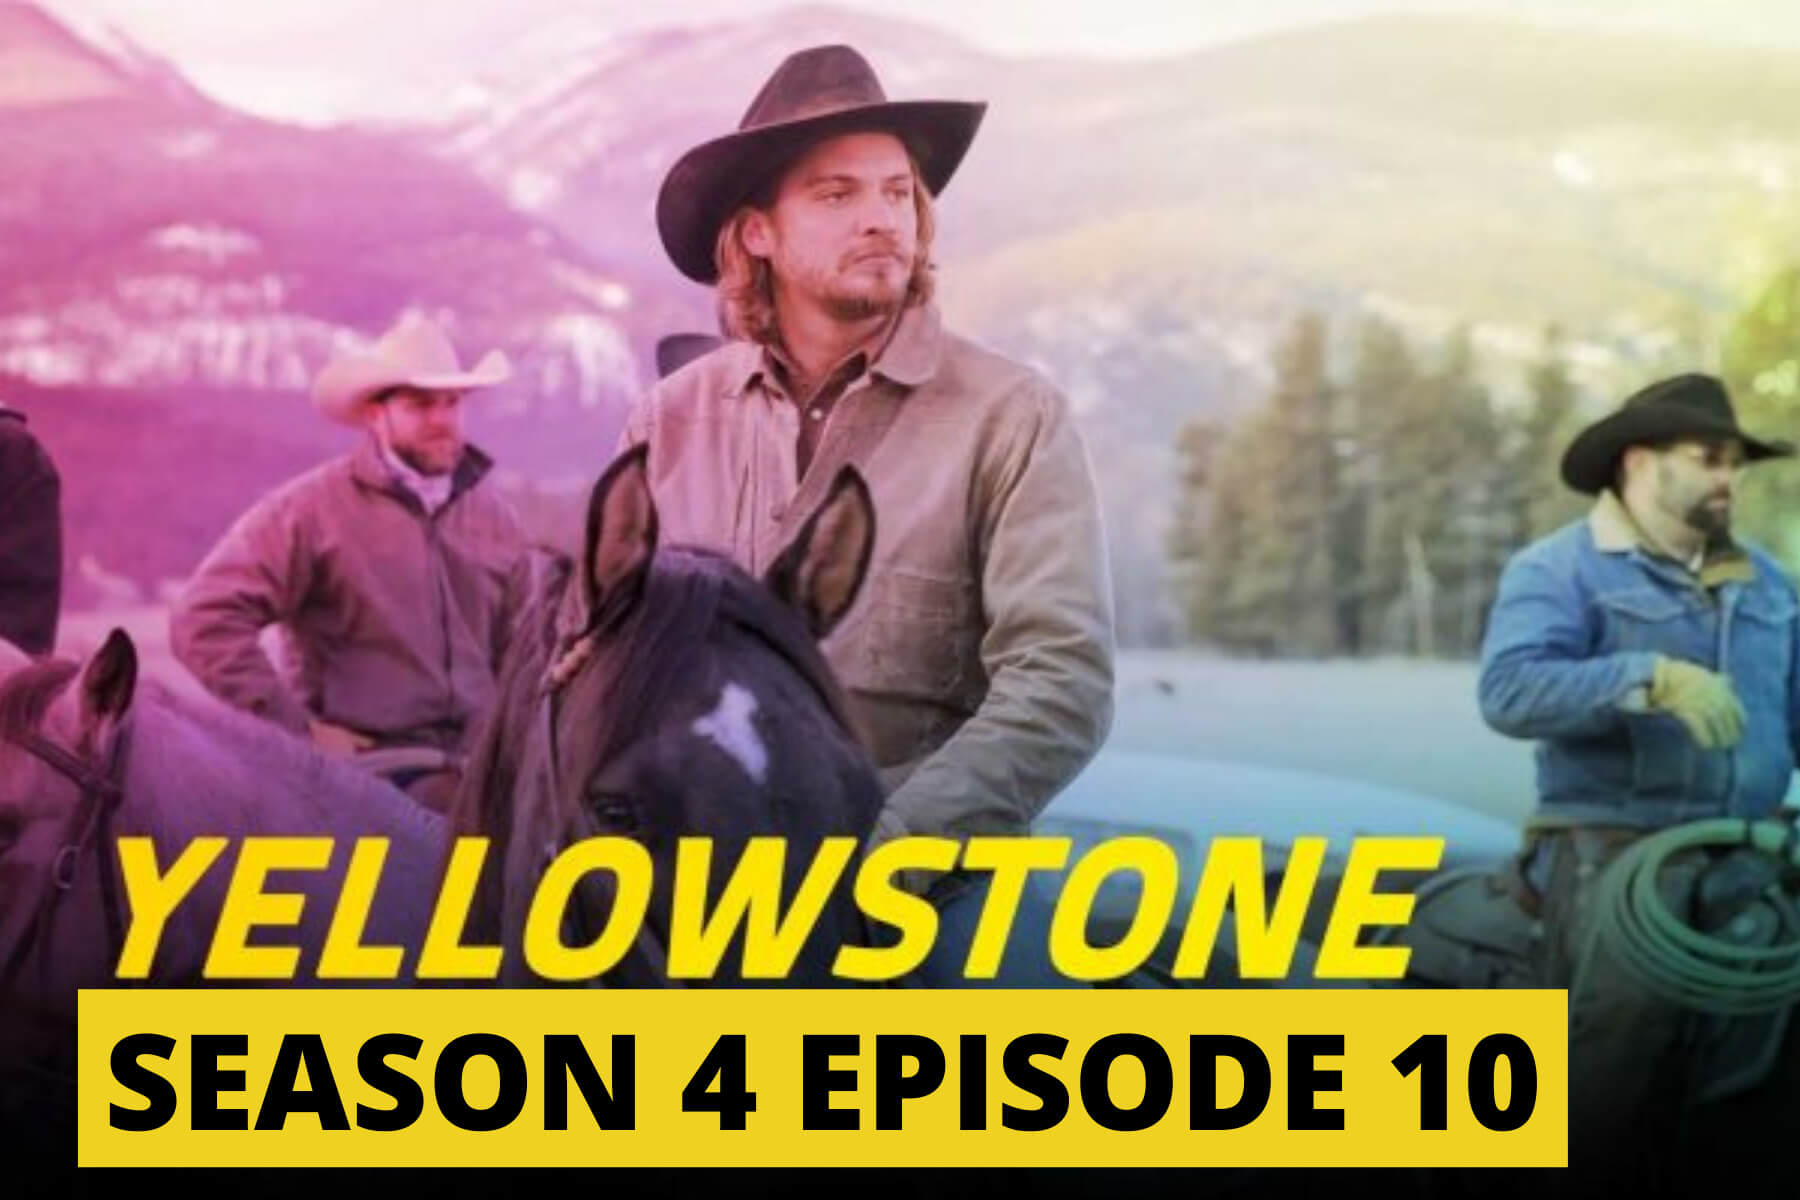 Yellowstone Season 4 episodes 10